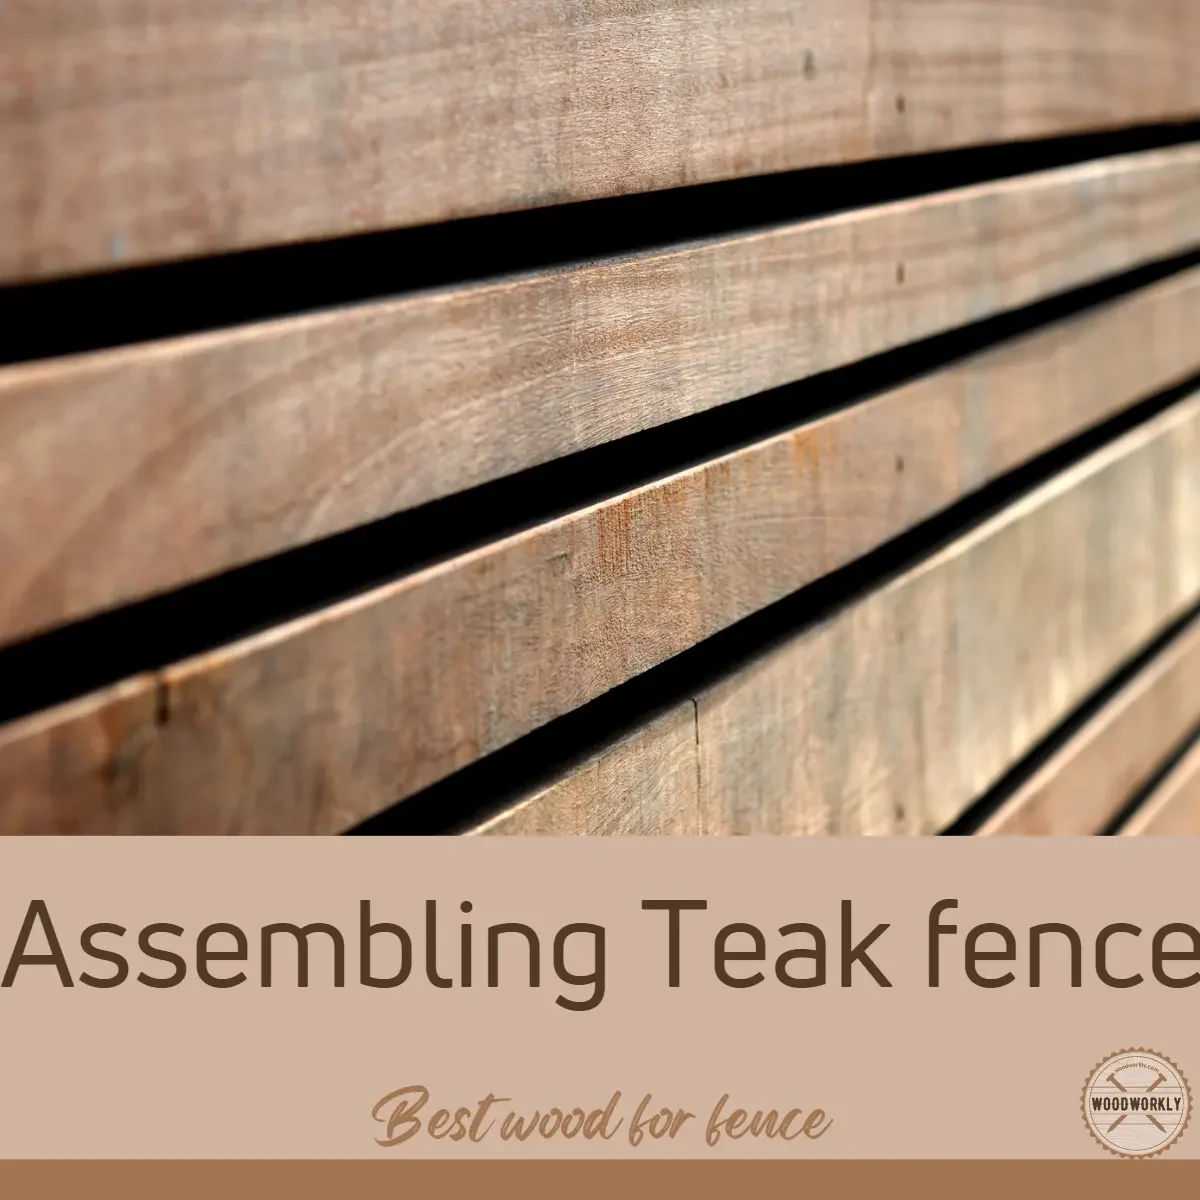 Assembling Teak fence